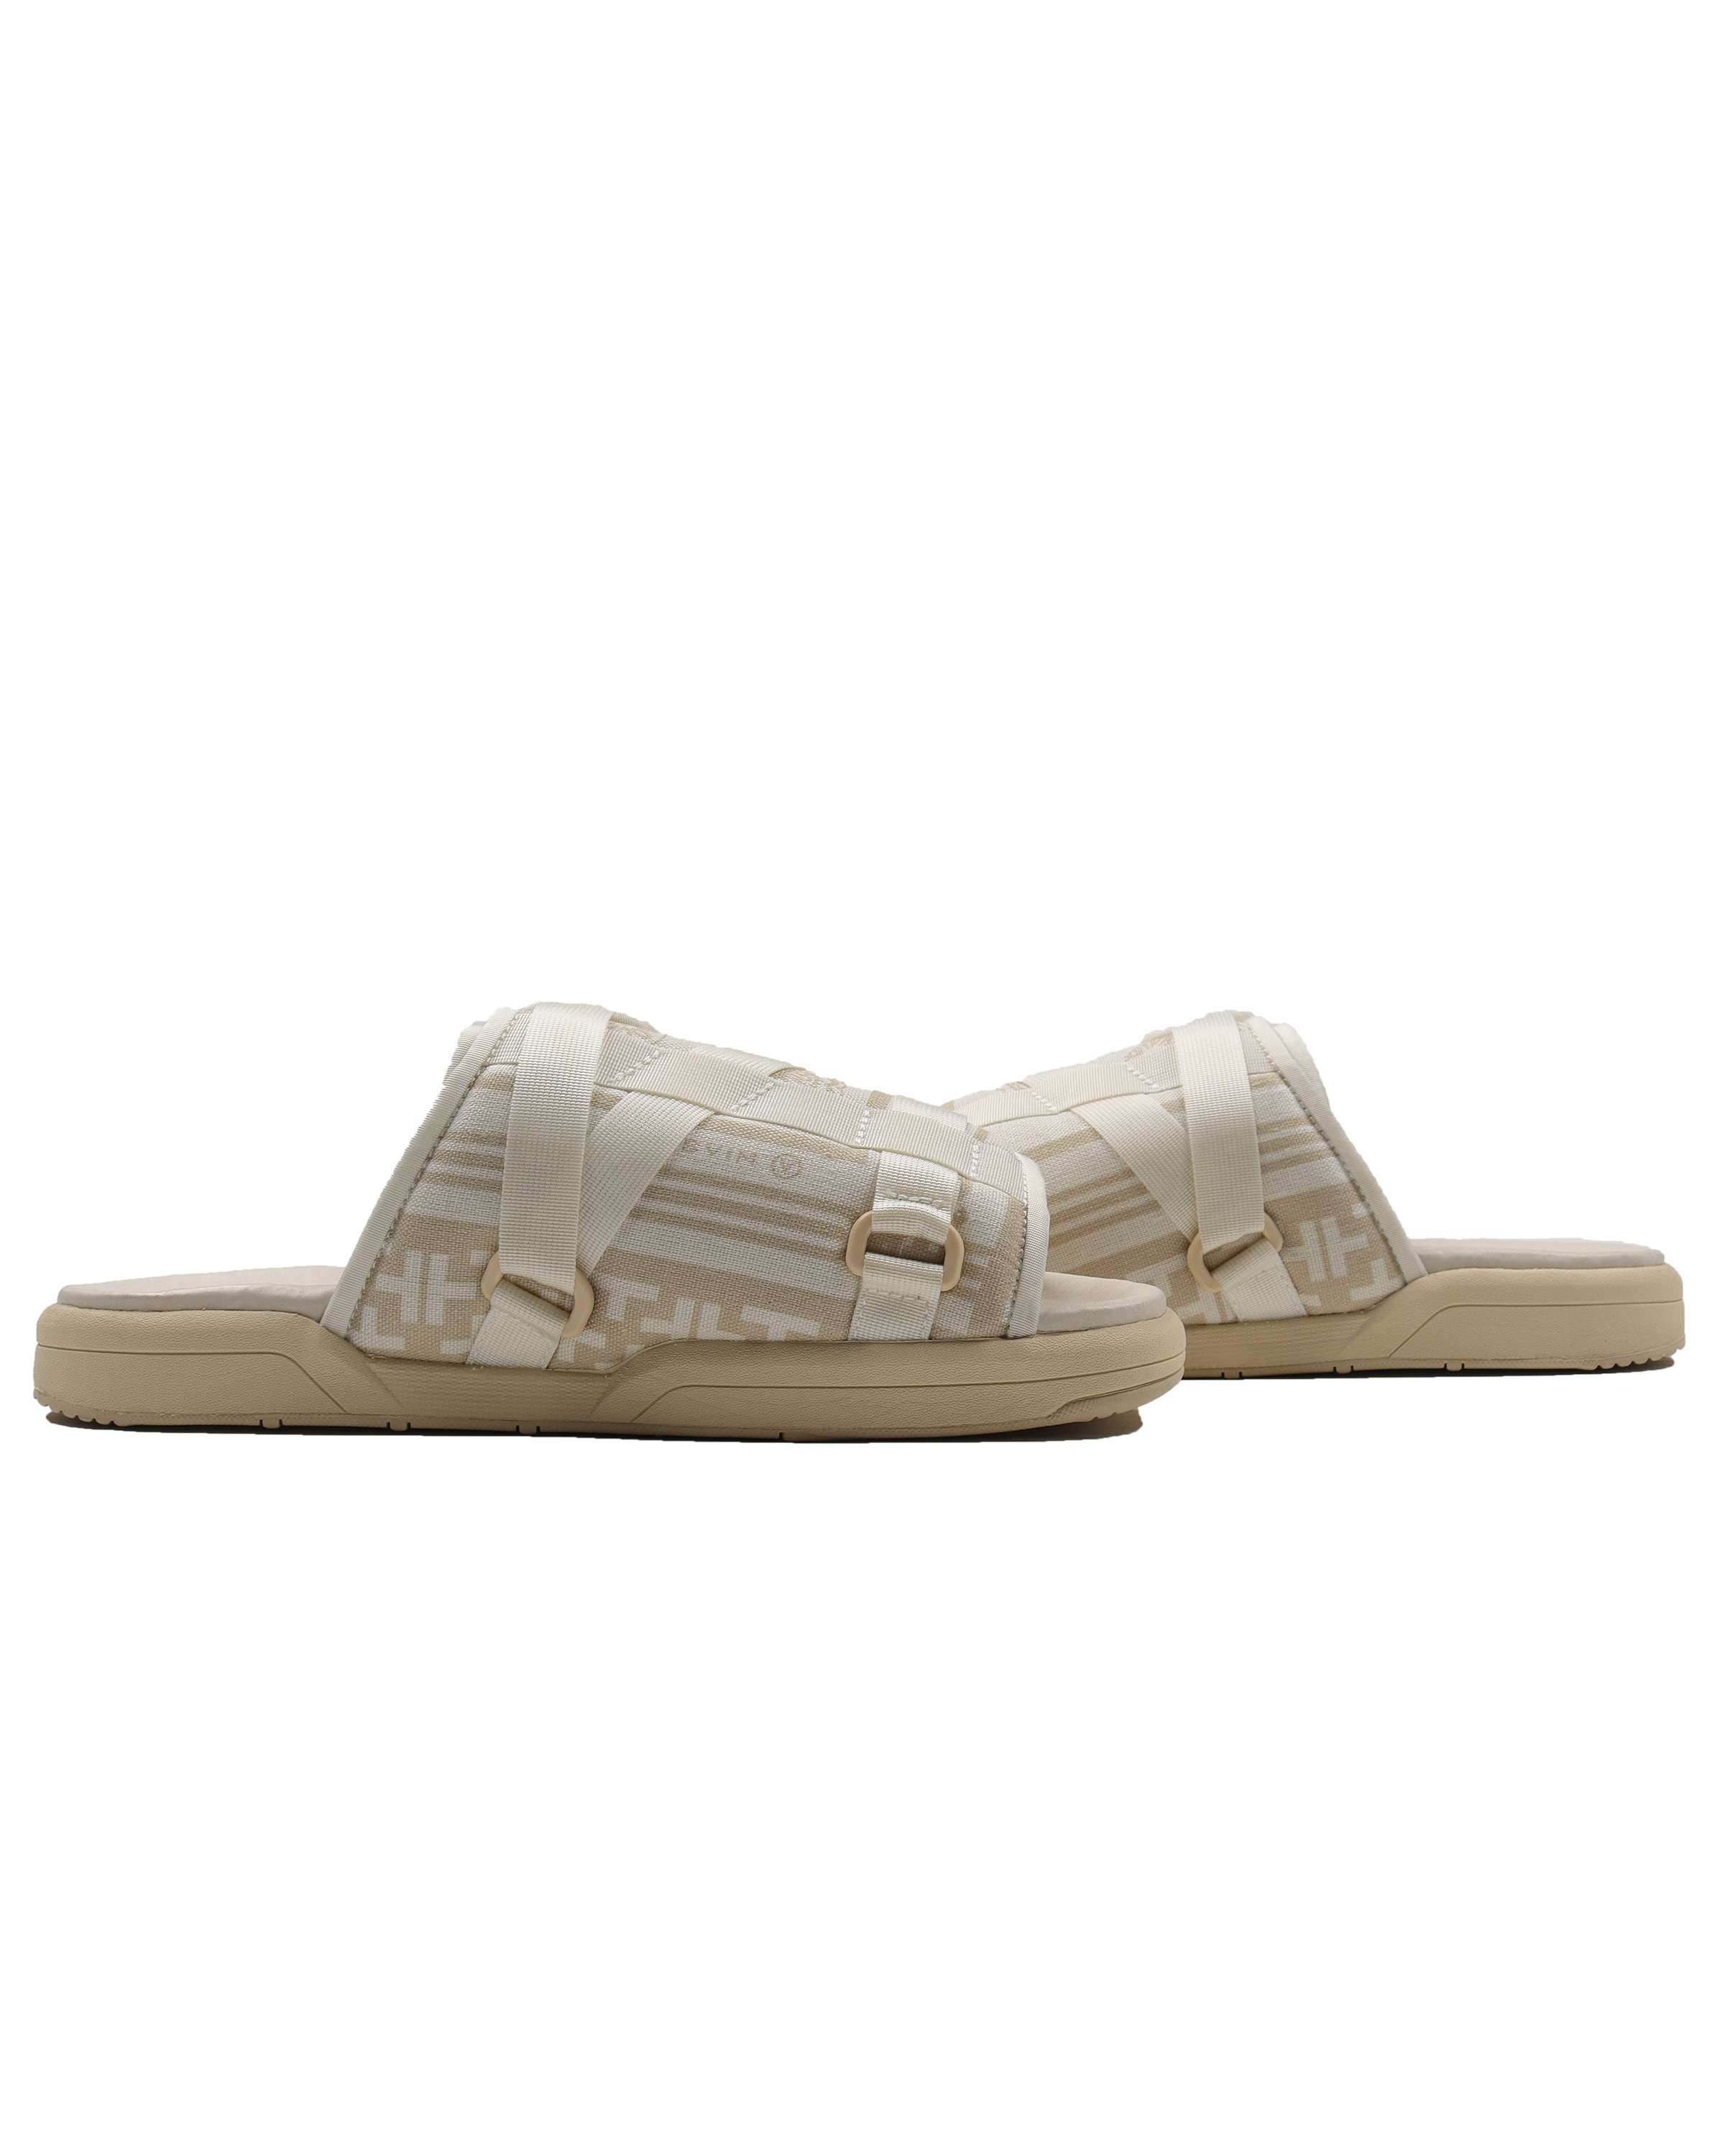 White Bandana Christo Sandals